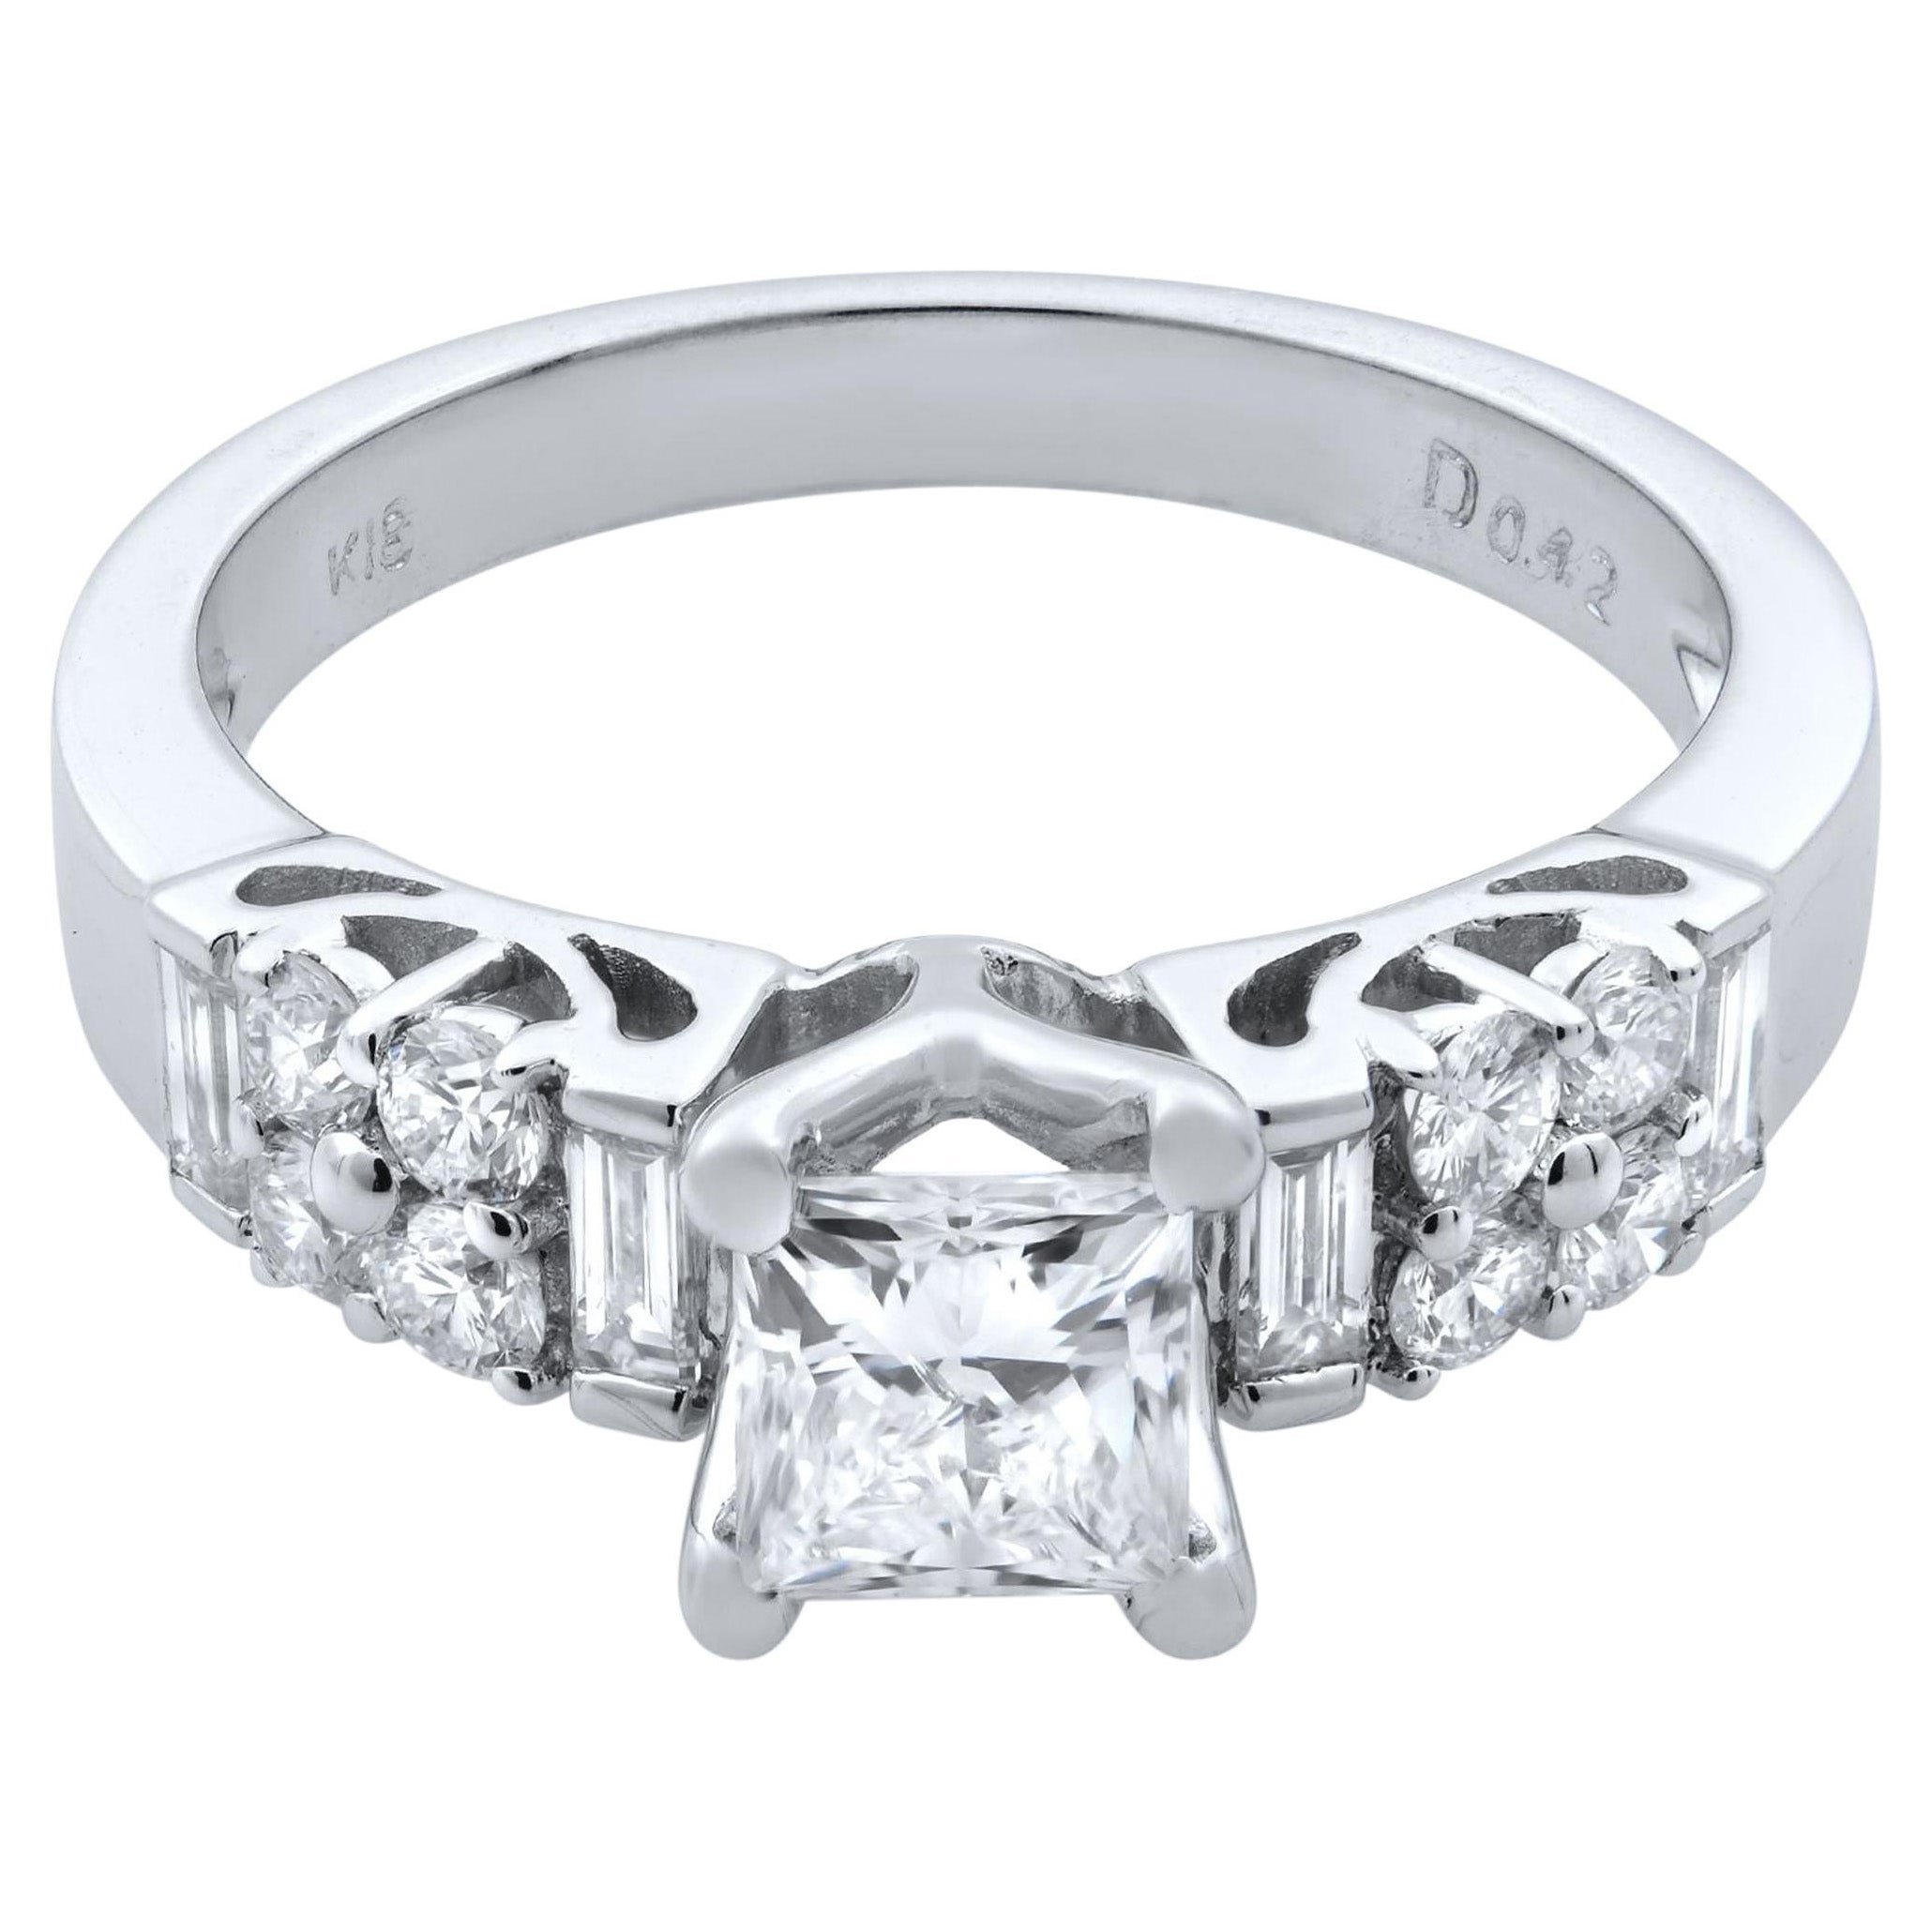 Rachel Koen 18 Karat White Gold Princess Cut Diamond Engagement Ring 1.00 Carat